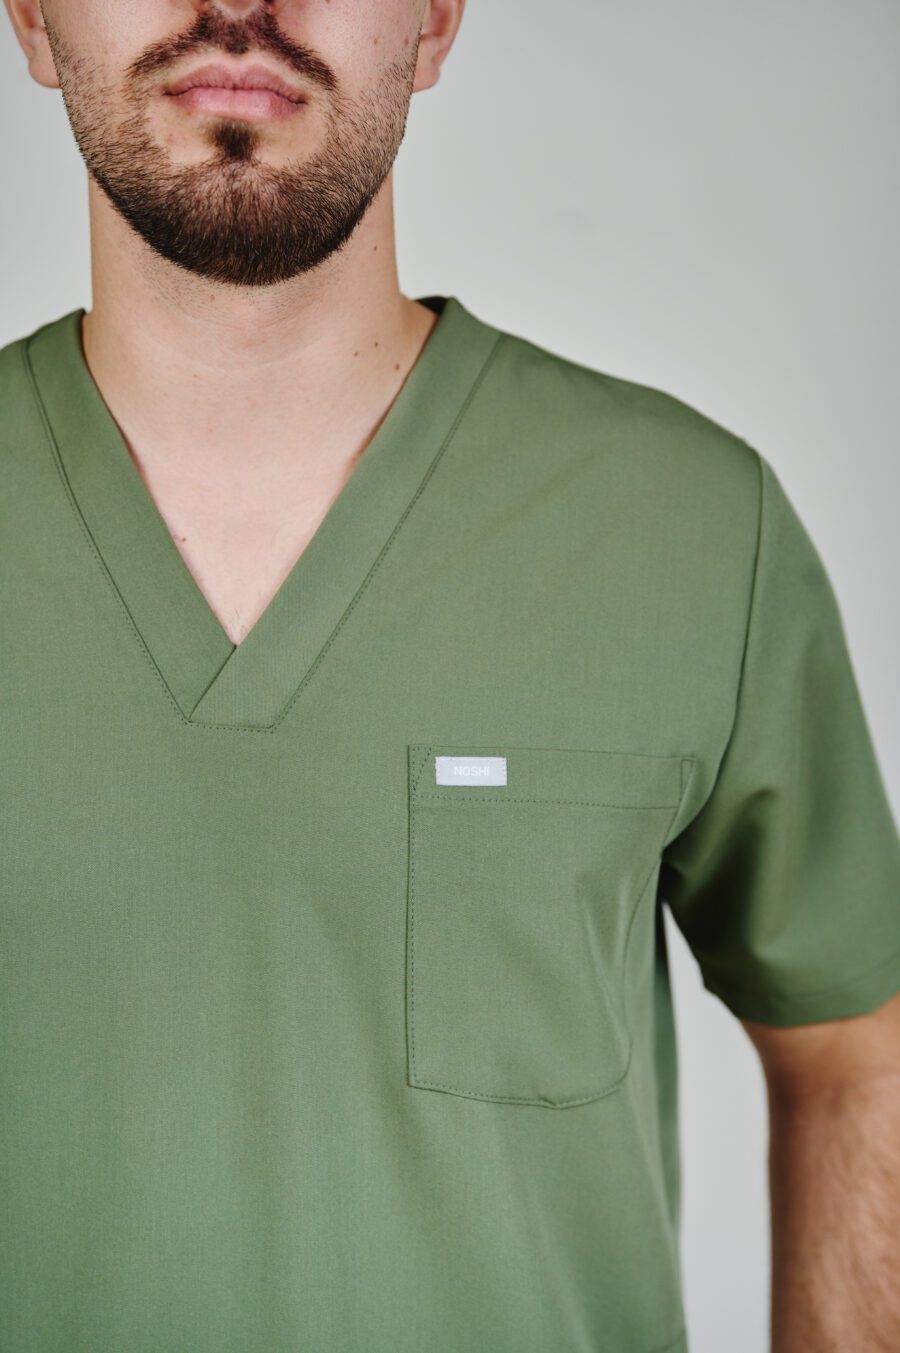 men's medical sweatshirt in olive green